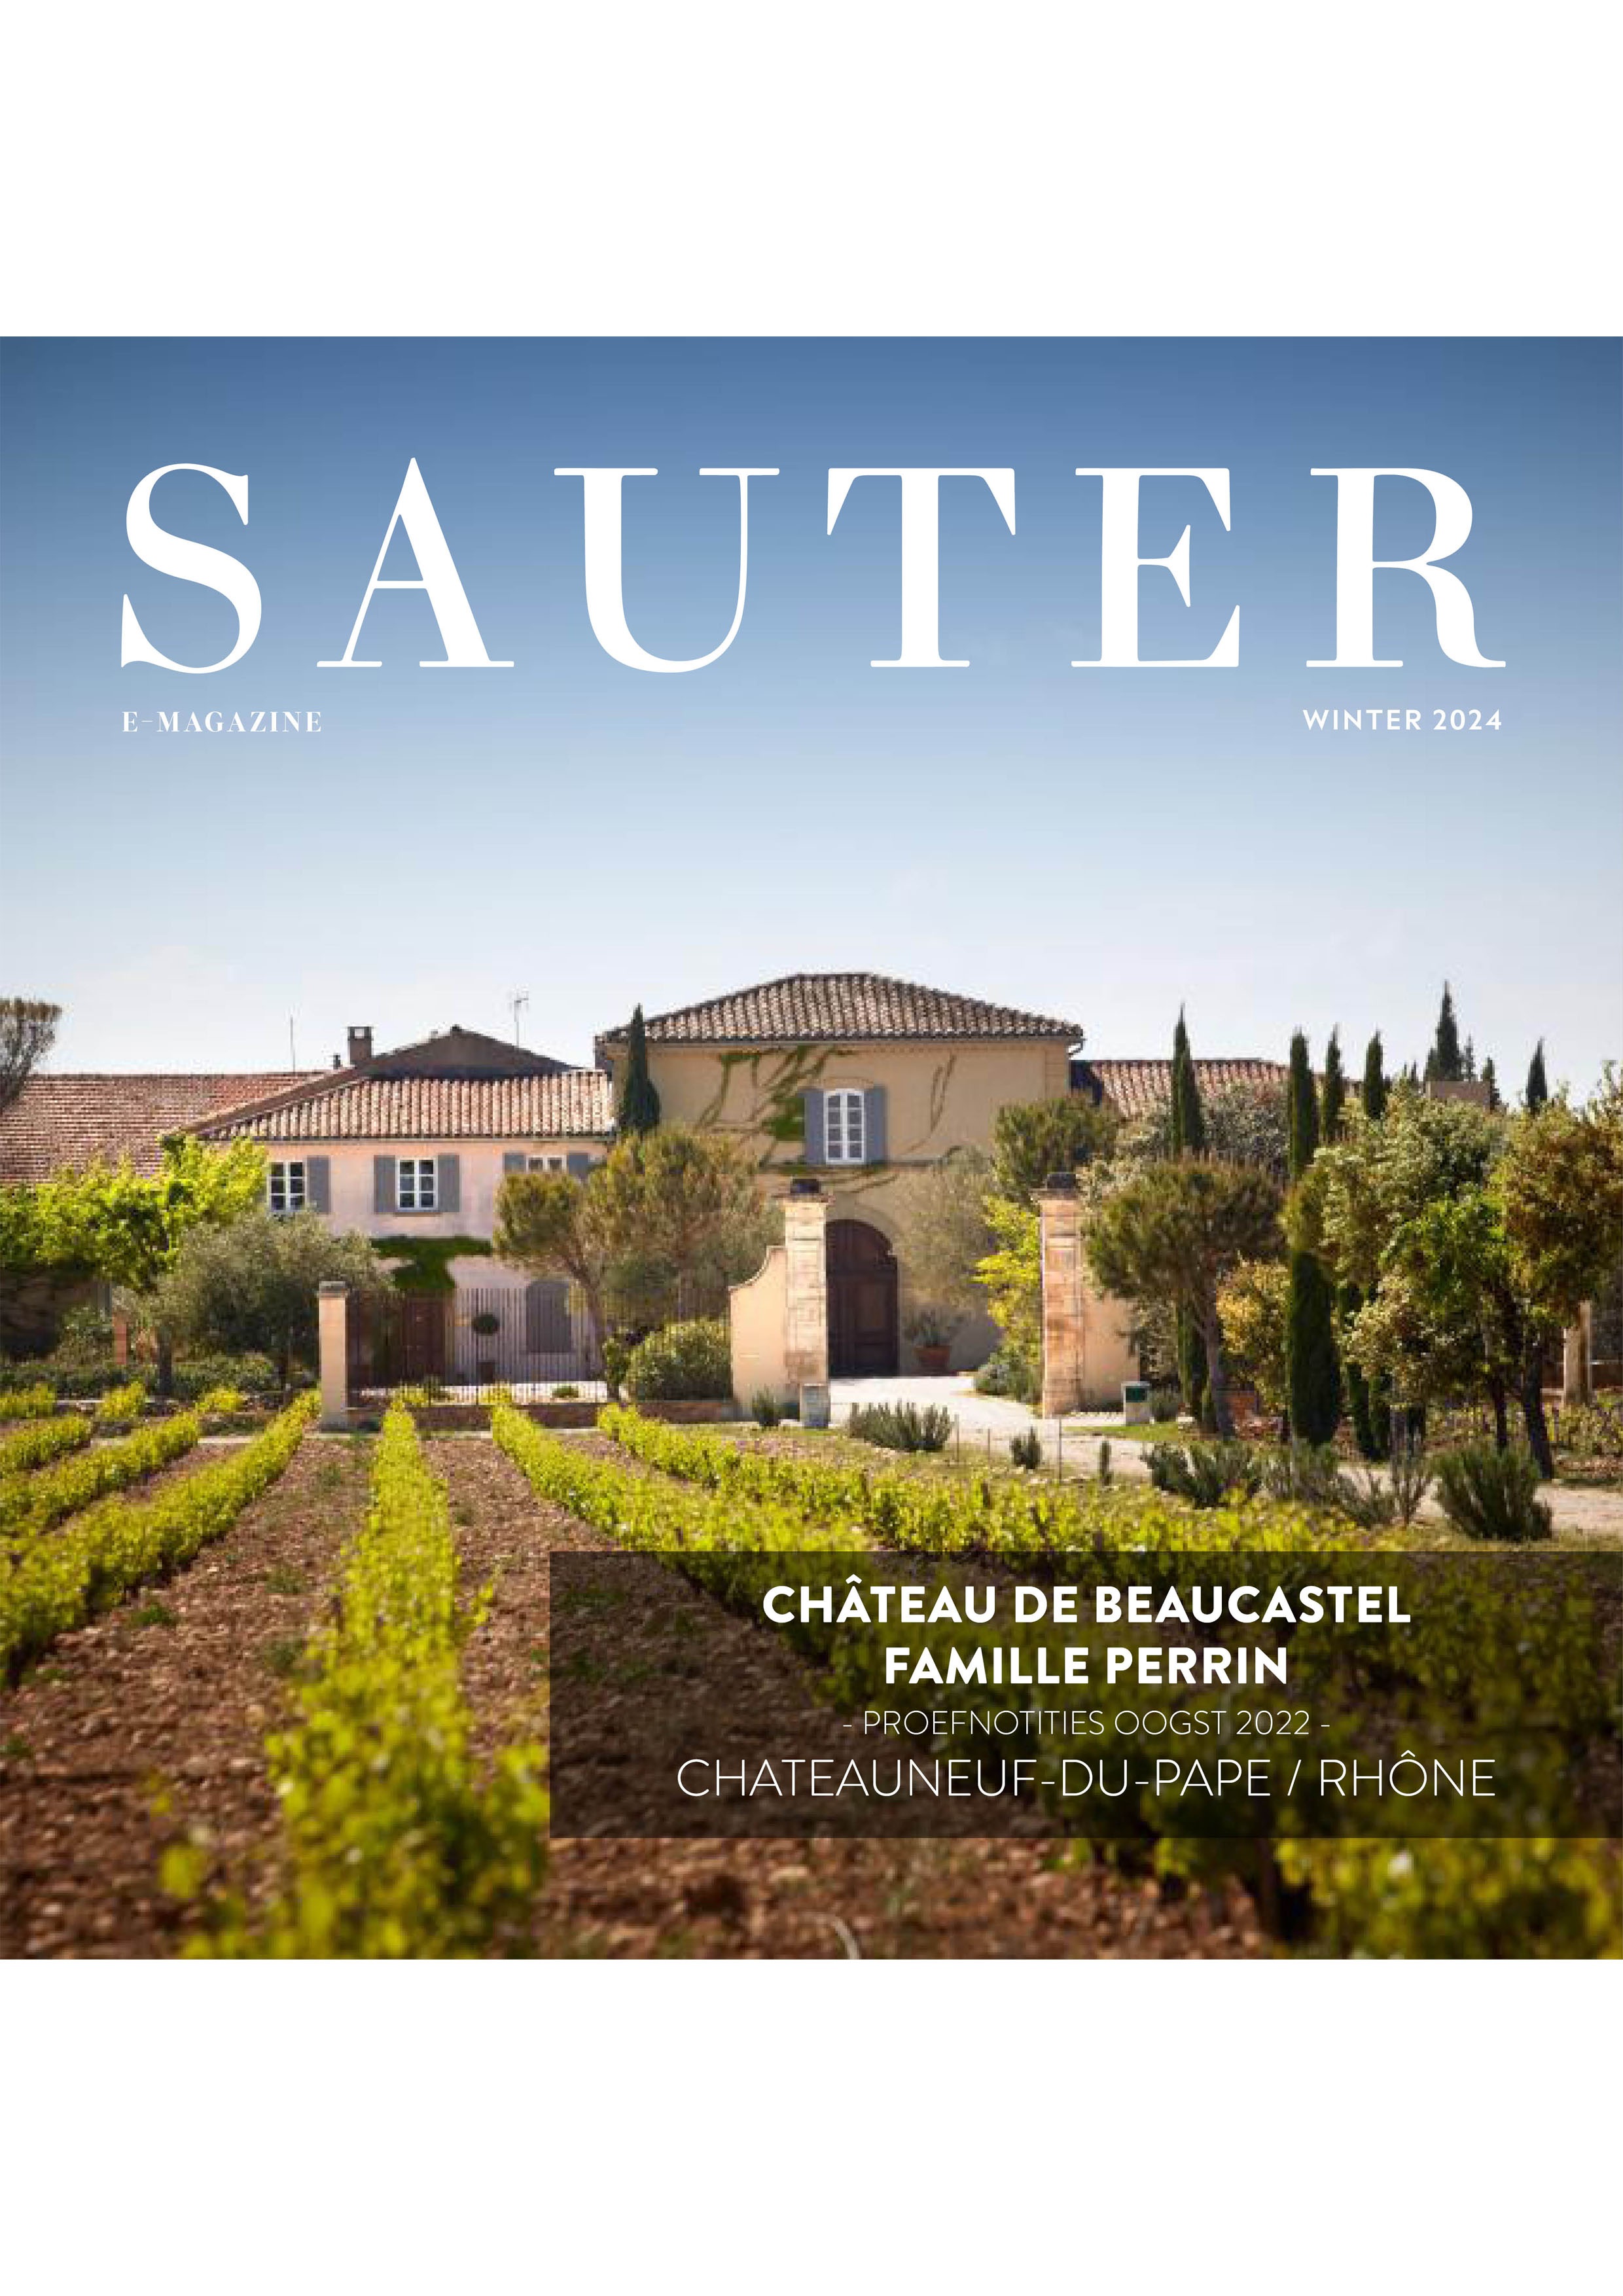 e-Magazine Château de Beaucastel oogst 2022